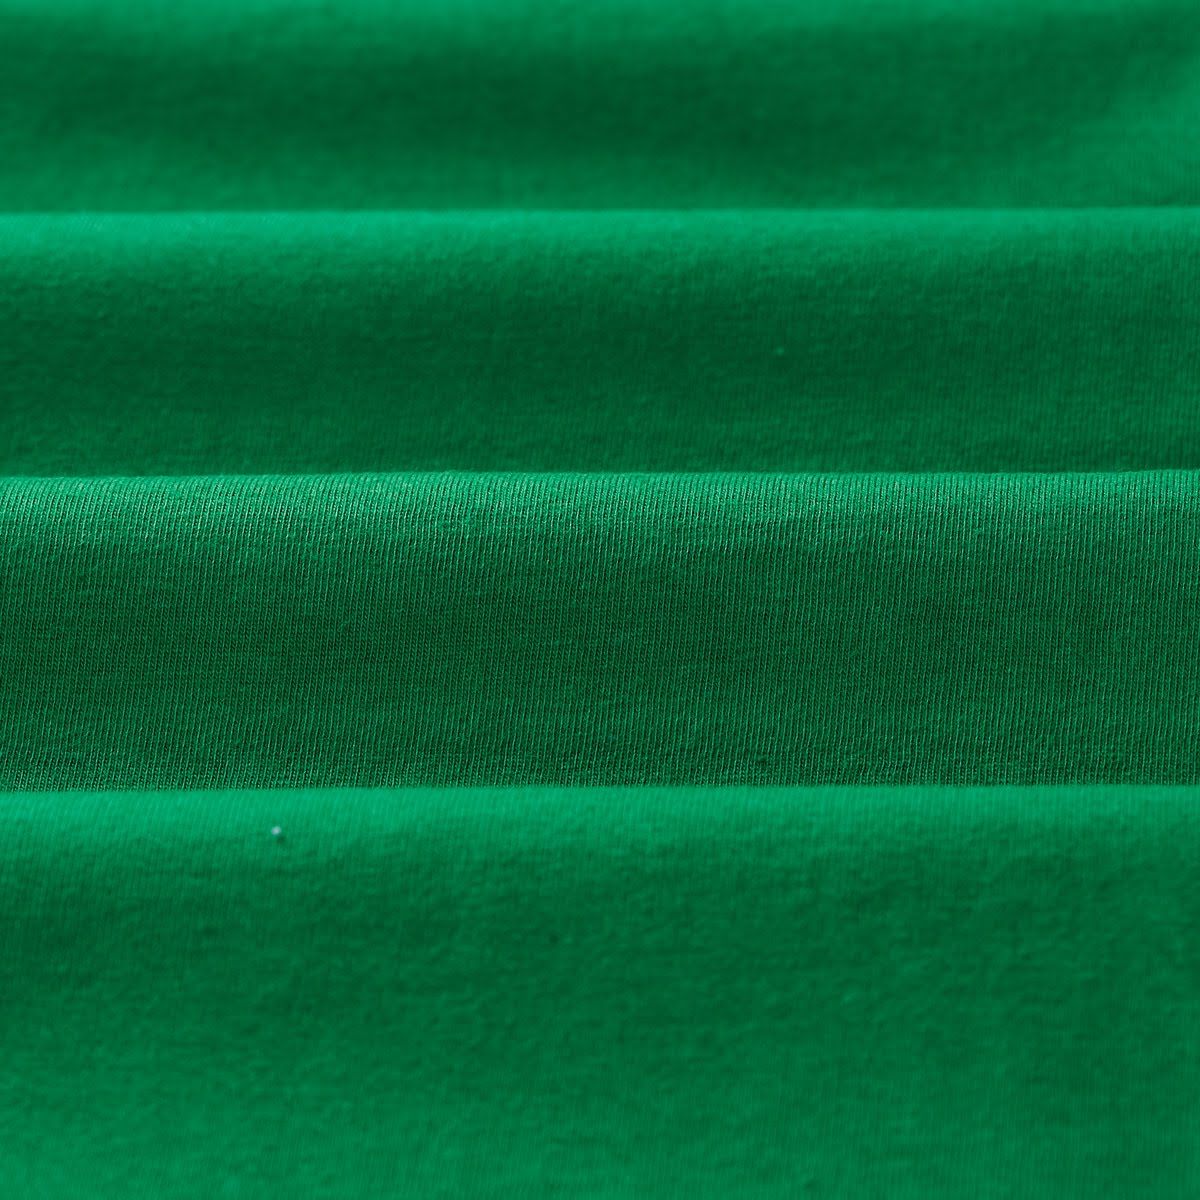 Meia Malha 30X1 Anti-Pilling 1,20 m -  Verde Bandeira  (Fora de Coleção)